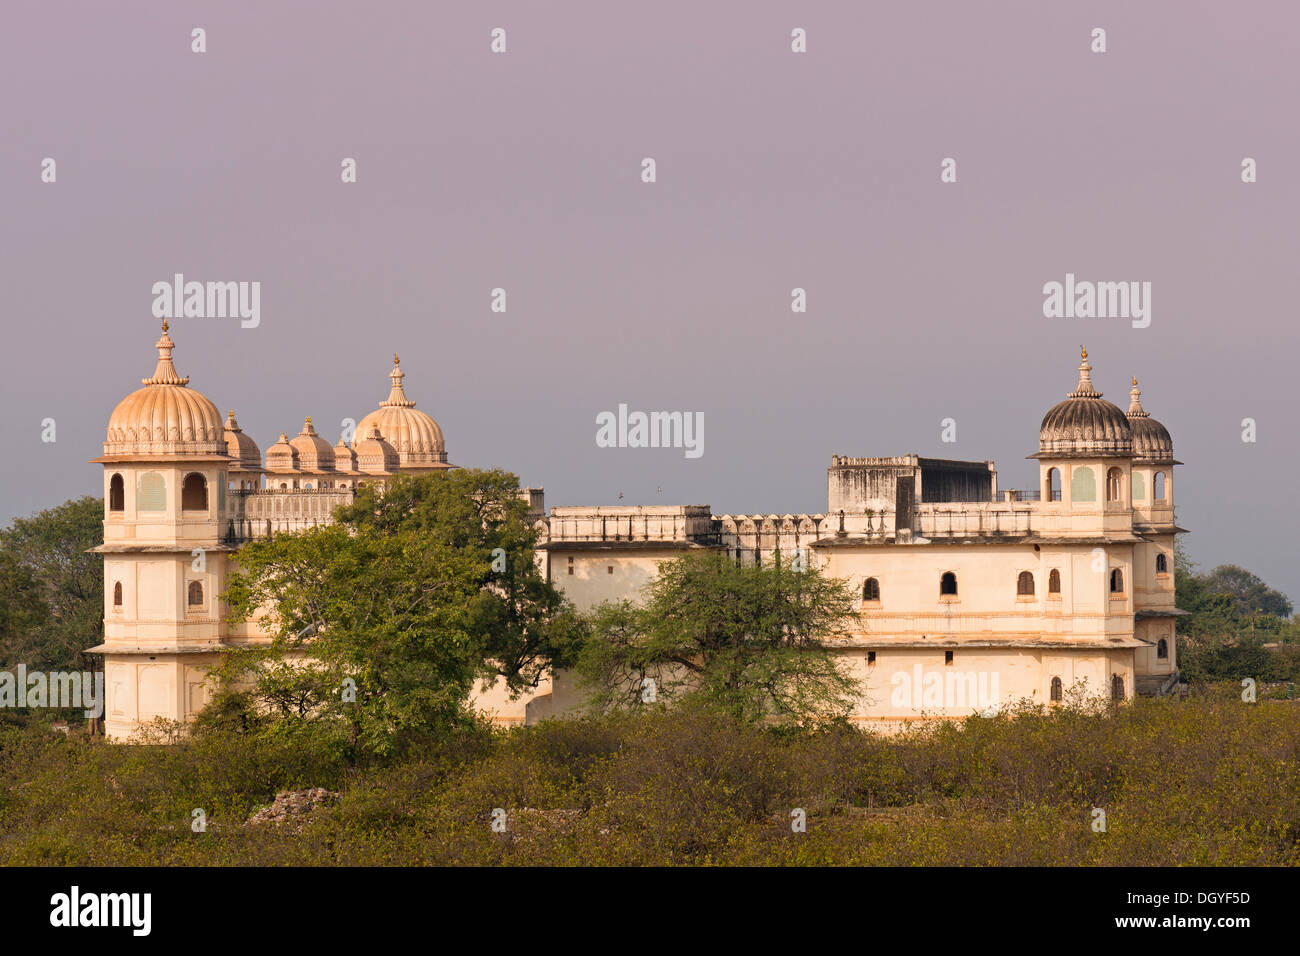 Fateh Prakash Palace, museum, Chittorgarh Fort, Chittorgarh, Rajasthan, India Stock Photo